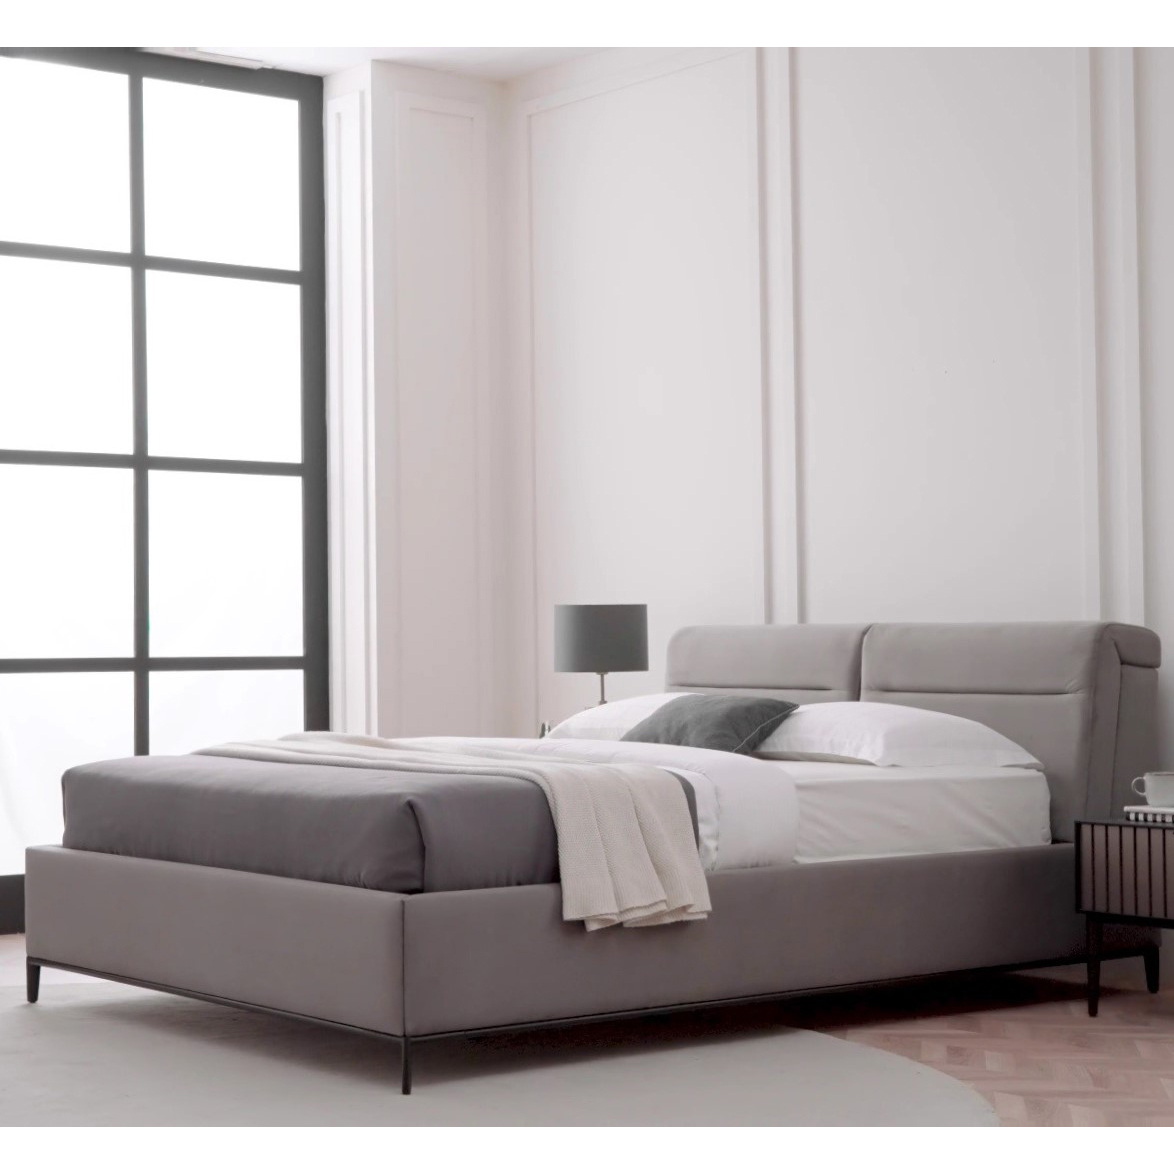 Кровать Enza Home Riga, двуспальная, с подъемным механизмом, 160х200 см